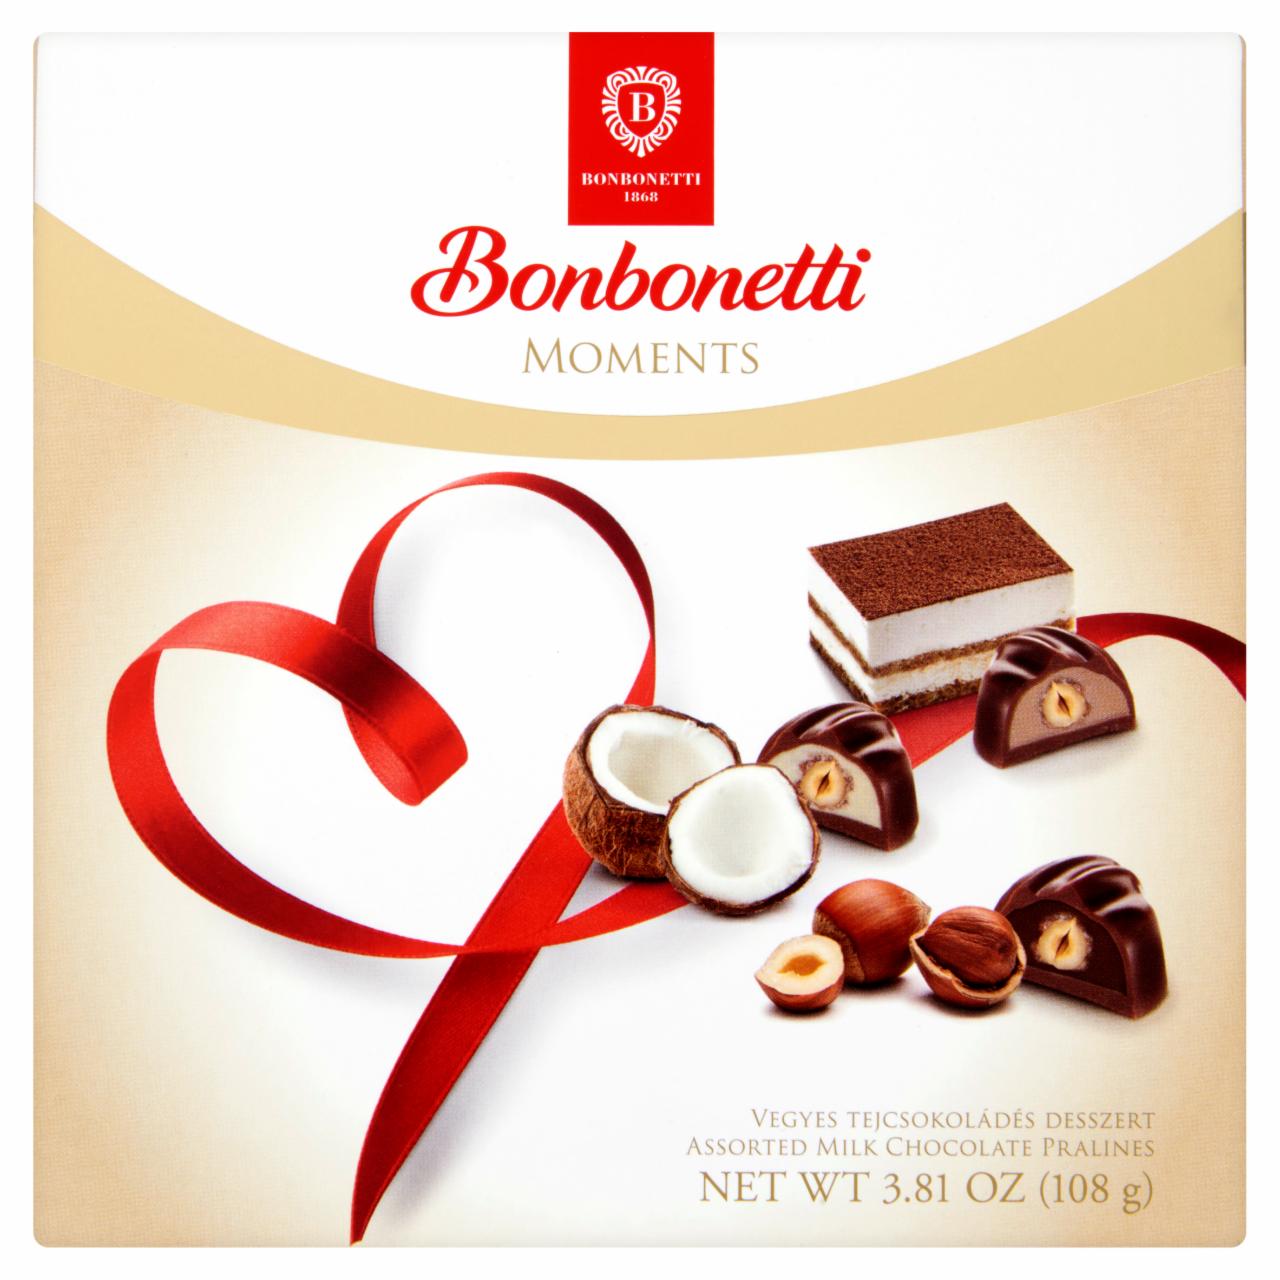 Képek - Bonbonetti Moments vegyes tejcsokoládés desszert 9 db 108 g